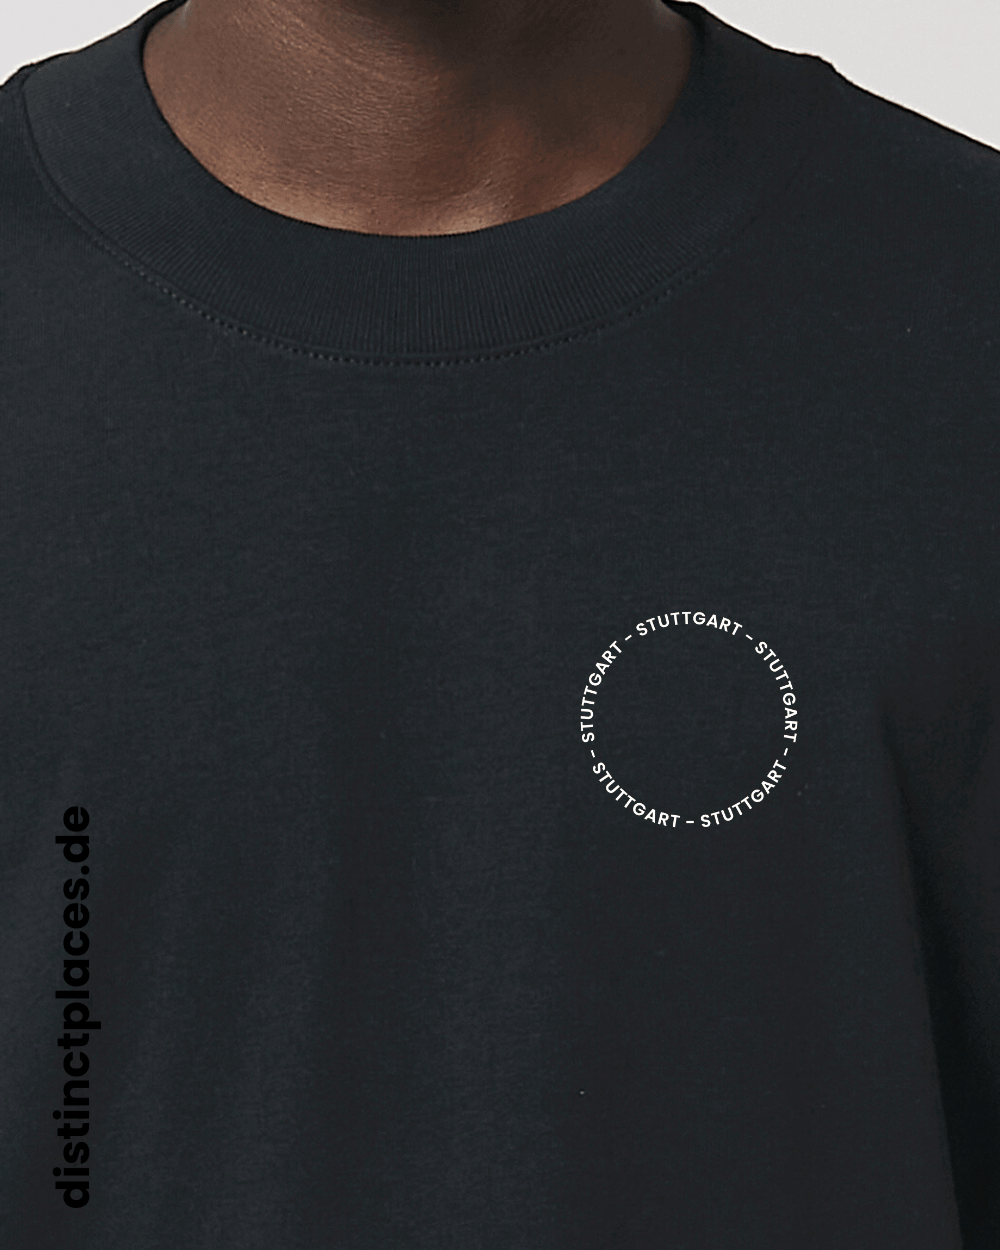 Detailansicht schwarzes fairtrade, vegan und bio-baumwoll Oversized T-Shirt von vorne mit einem minimalistischem weißen Logo, beziehungsweise Schriftzug für Stuttgart